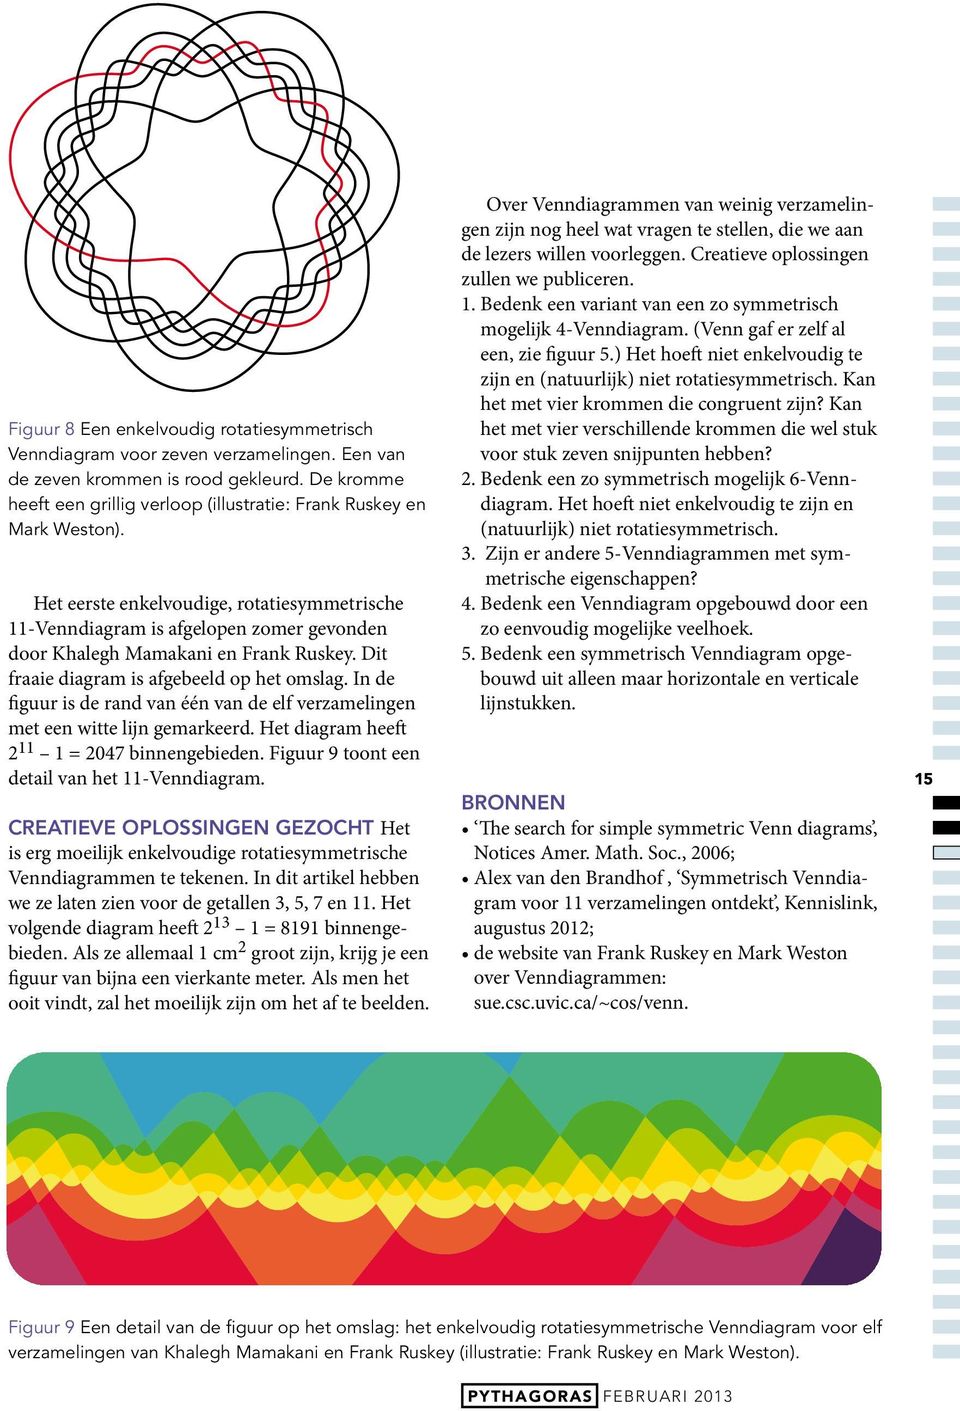 Het eerste enkelvoudige, rotatiesymmetrische 11-Venndiagram is afgelopen zomer gevonden door Khalegh Mamakani en Frank Ruskey. Dit fraaie diagram is afgebeeld op het omslag.